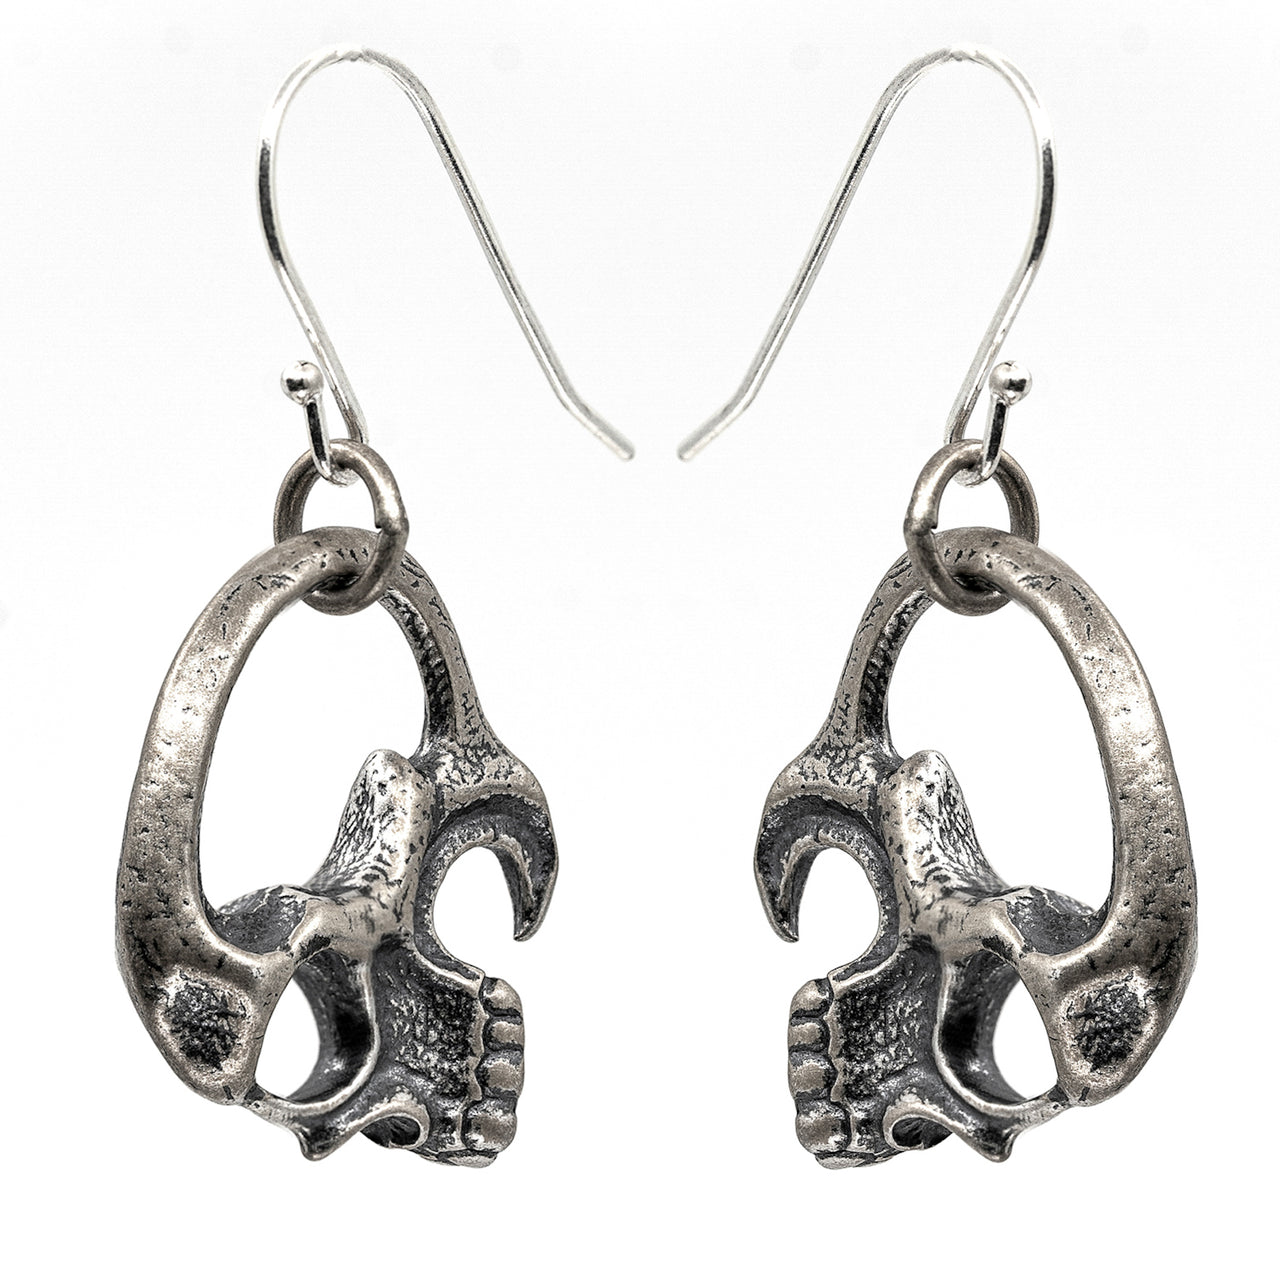 Skull Earring - Gothic Earrings - Black Feather Design